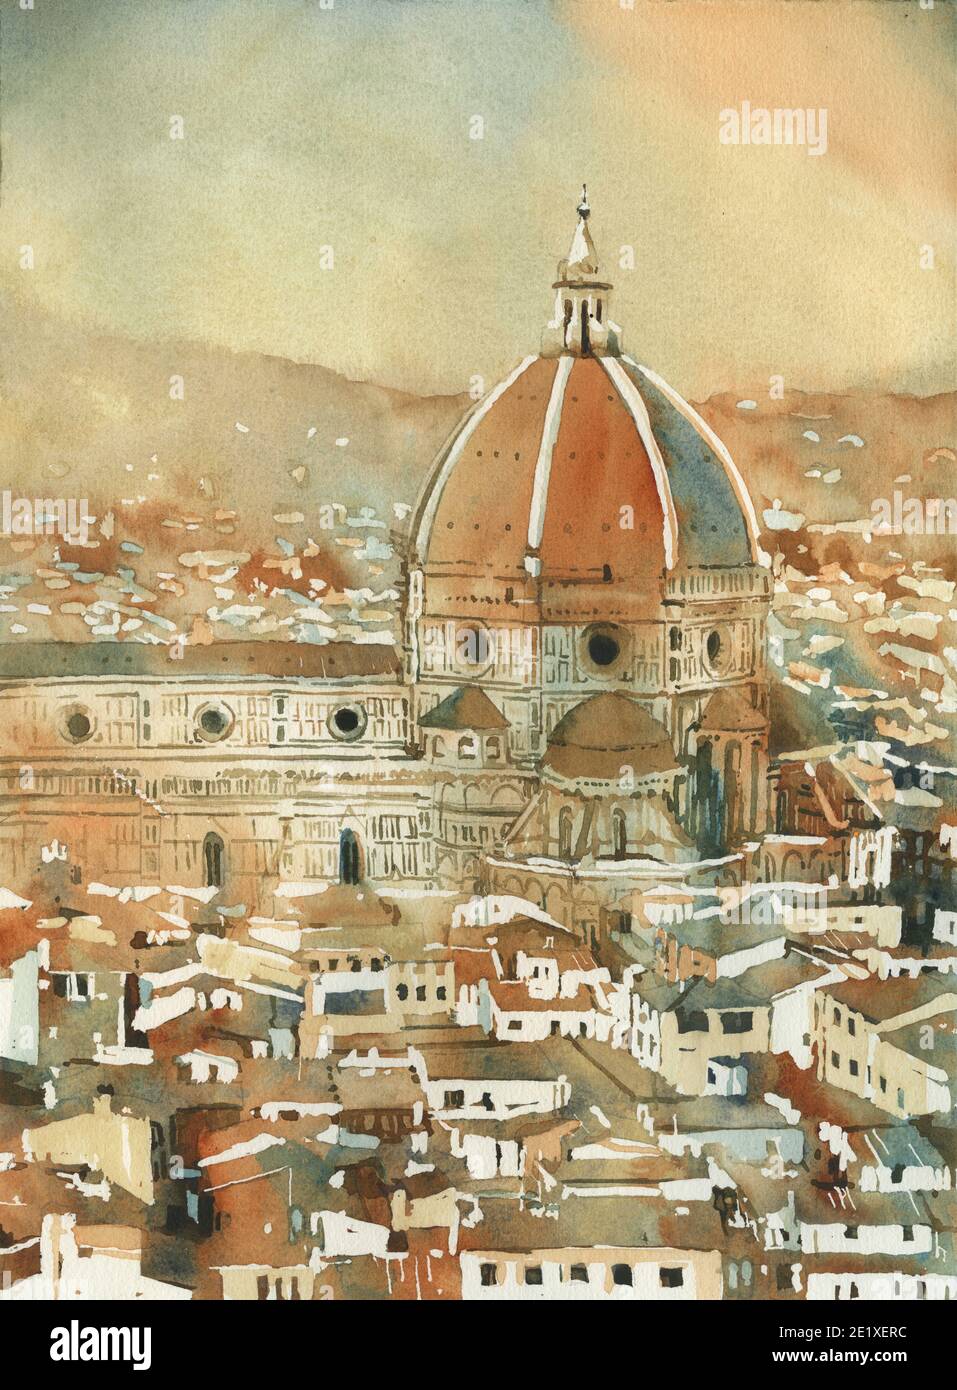 Duomo et le paysage urbain de Florence depuis le Palazzo di Michelangelo- Florence, Italie. Peinture aquarelle du Duomo Firenze Banque D'Images